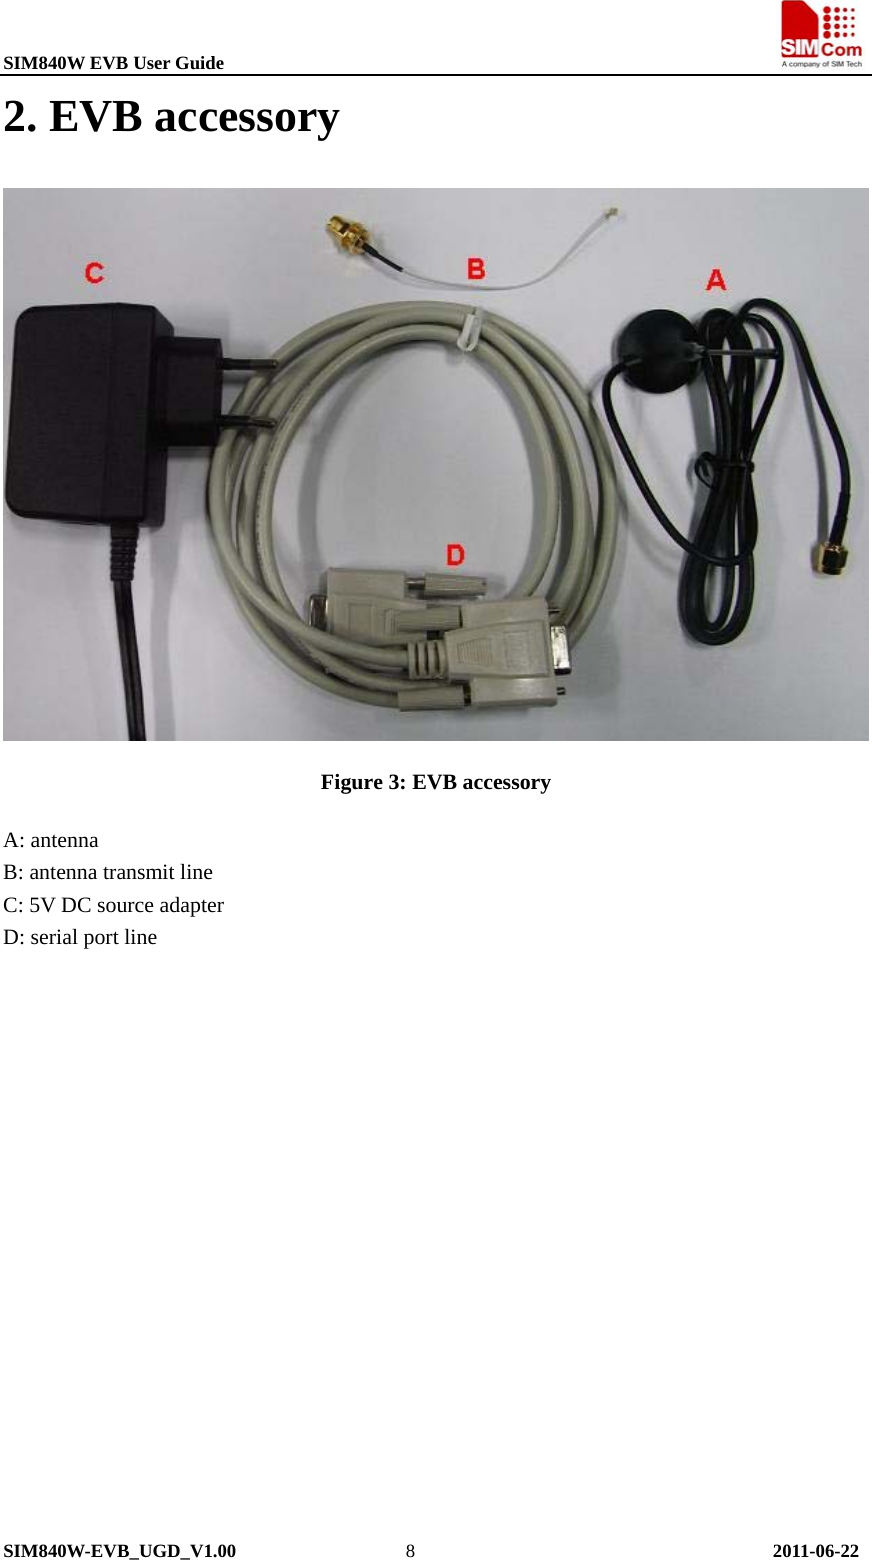 SIM840W EVB User Guide                                                             SIM840W-EVB_UGD_V1.00                  8                                      2011-06-22 2. EVB accessory  Figure 3: EVB accessory A: antenna B: antenna transmit line C: 5V DC source adapter D: serial port line   